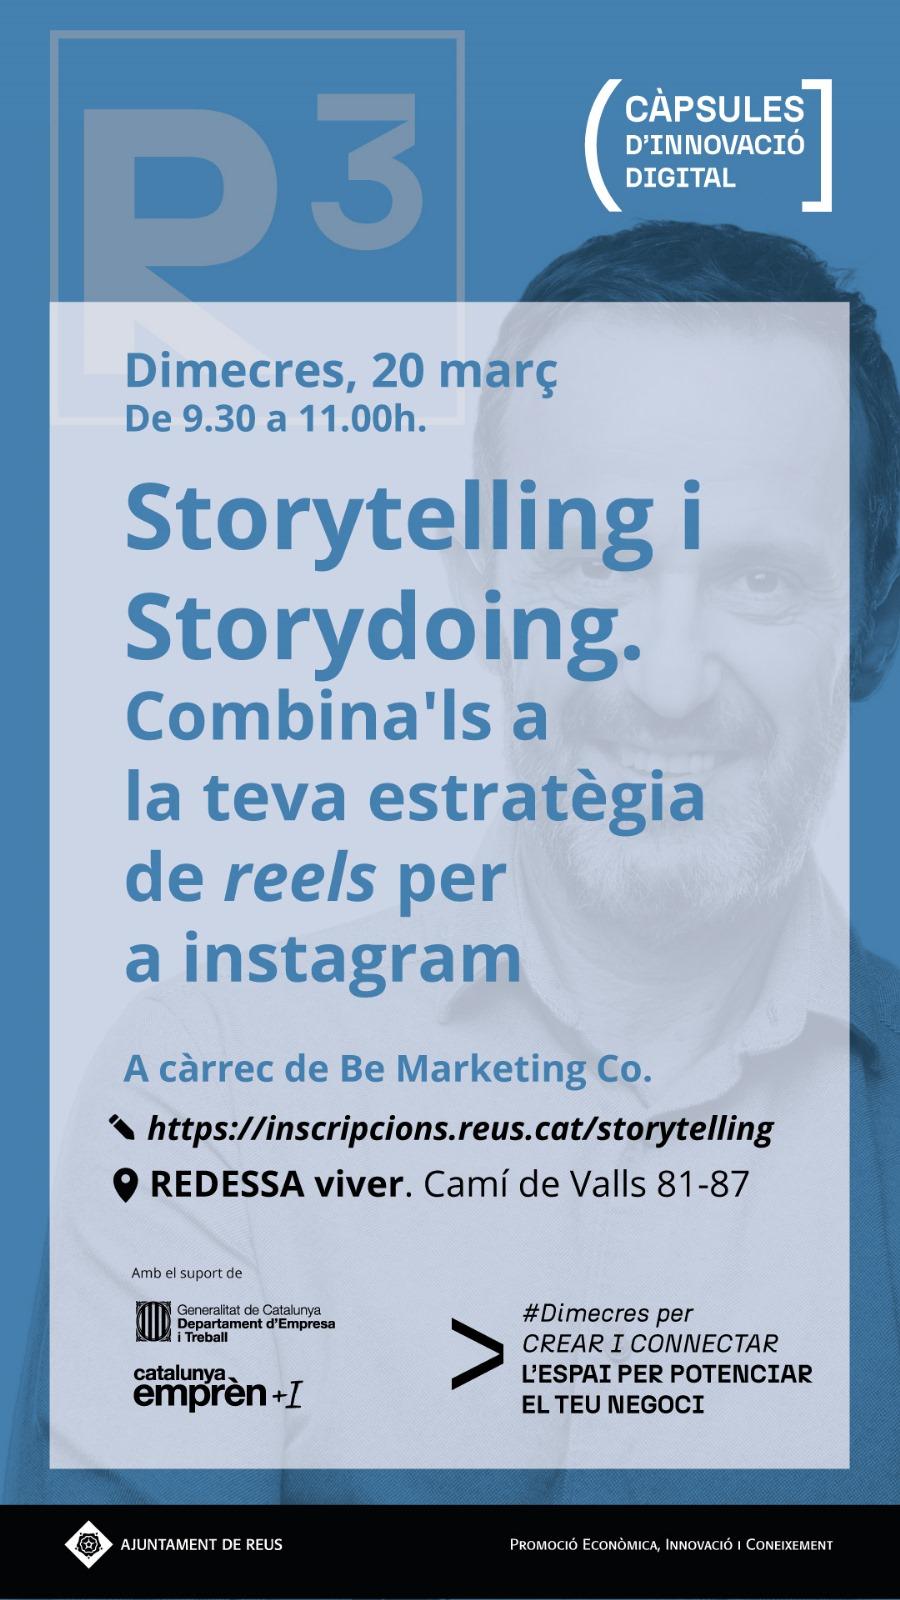 Storytelling i Storydoing. Combina'ls a la teva estratègia de reels per a instagramE